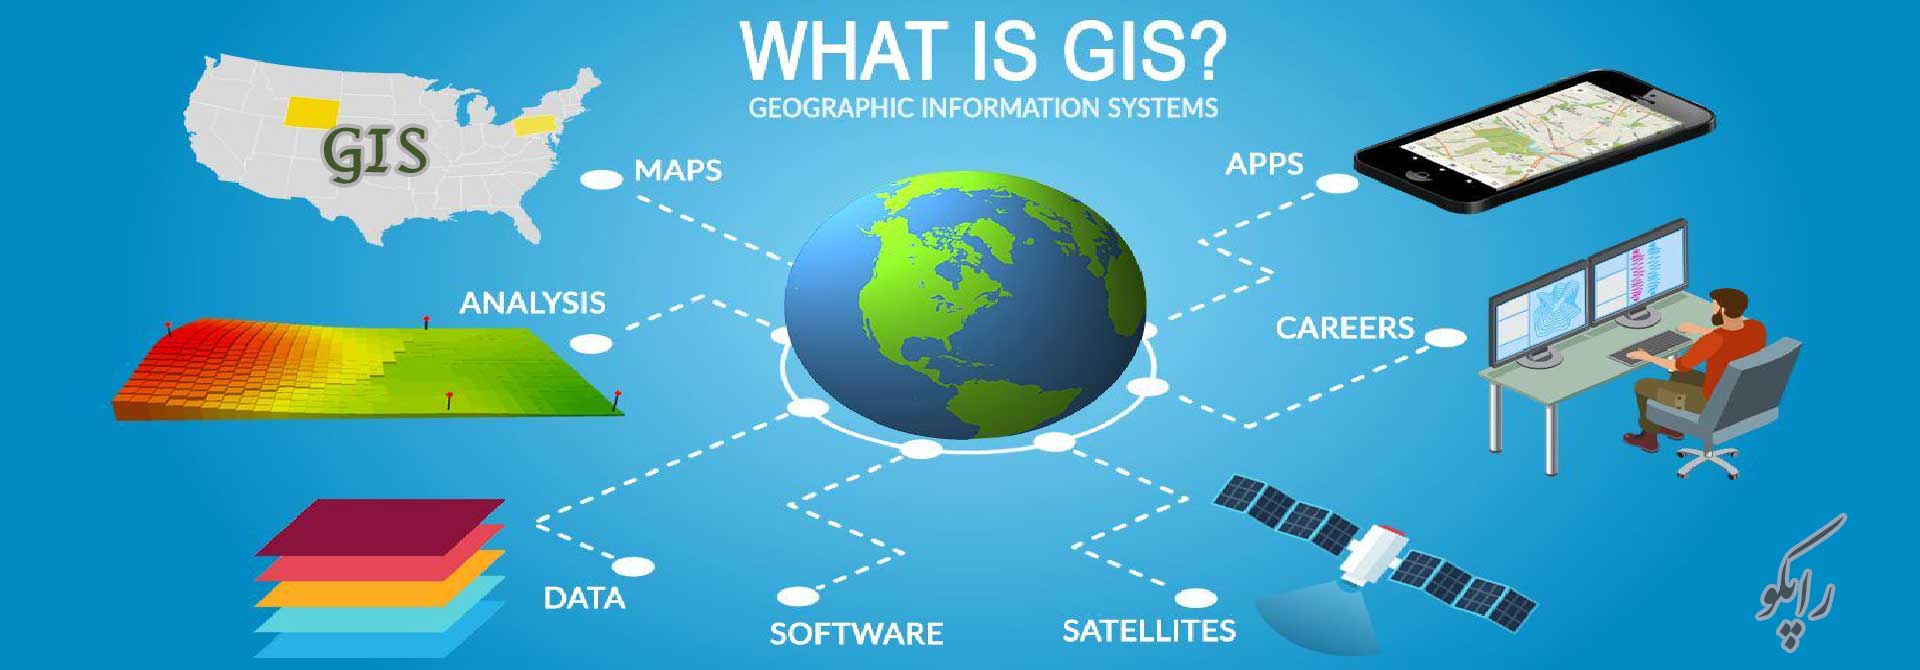 سیستم اطلاعات جغرافیایی GIS